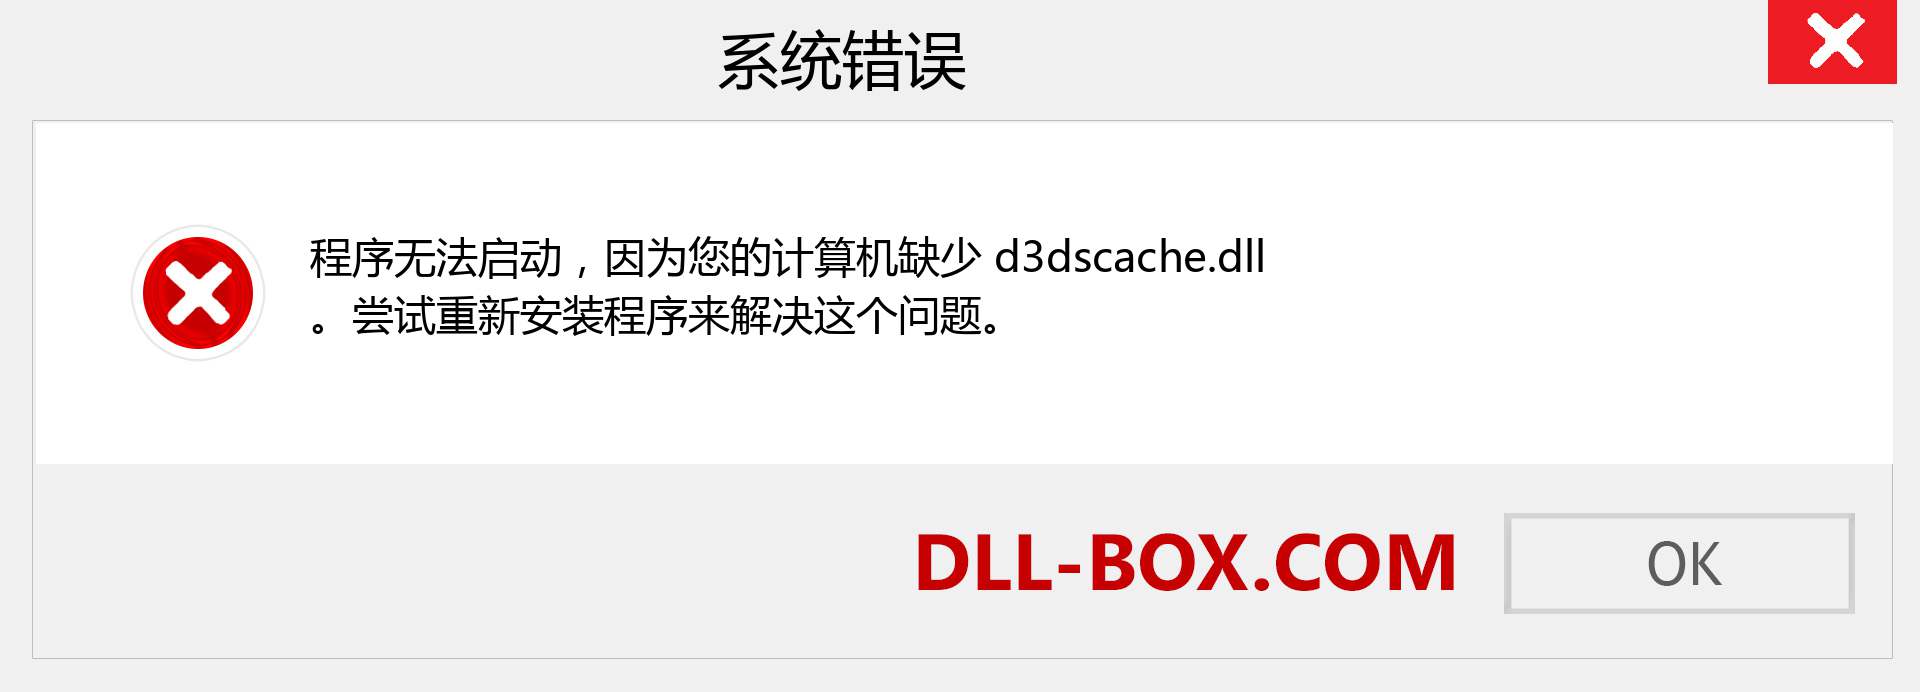 d3dscache.dll 文件丢失？。 适用于 Windows 7、8、10 的下载 - 修复 Windows、照片、图像上的 d3dscache dll 丢失错误